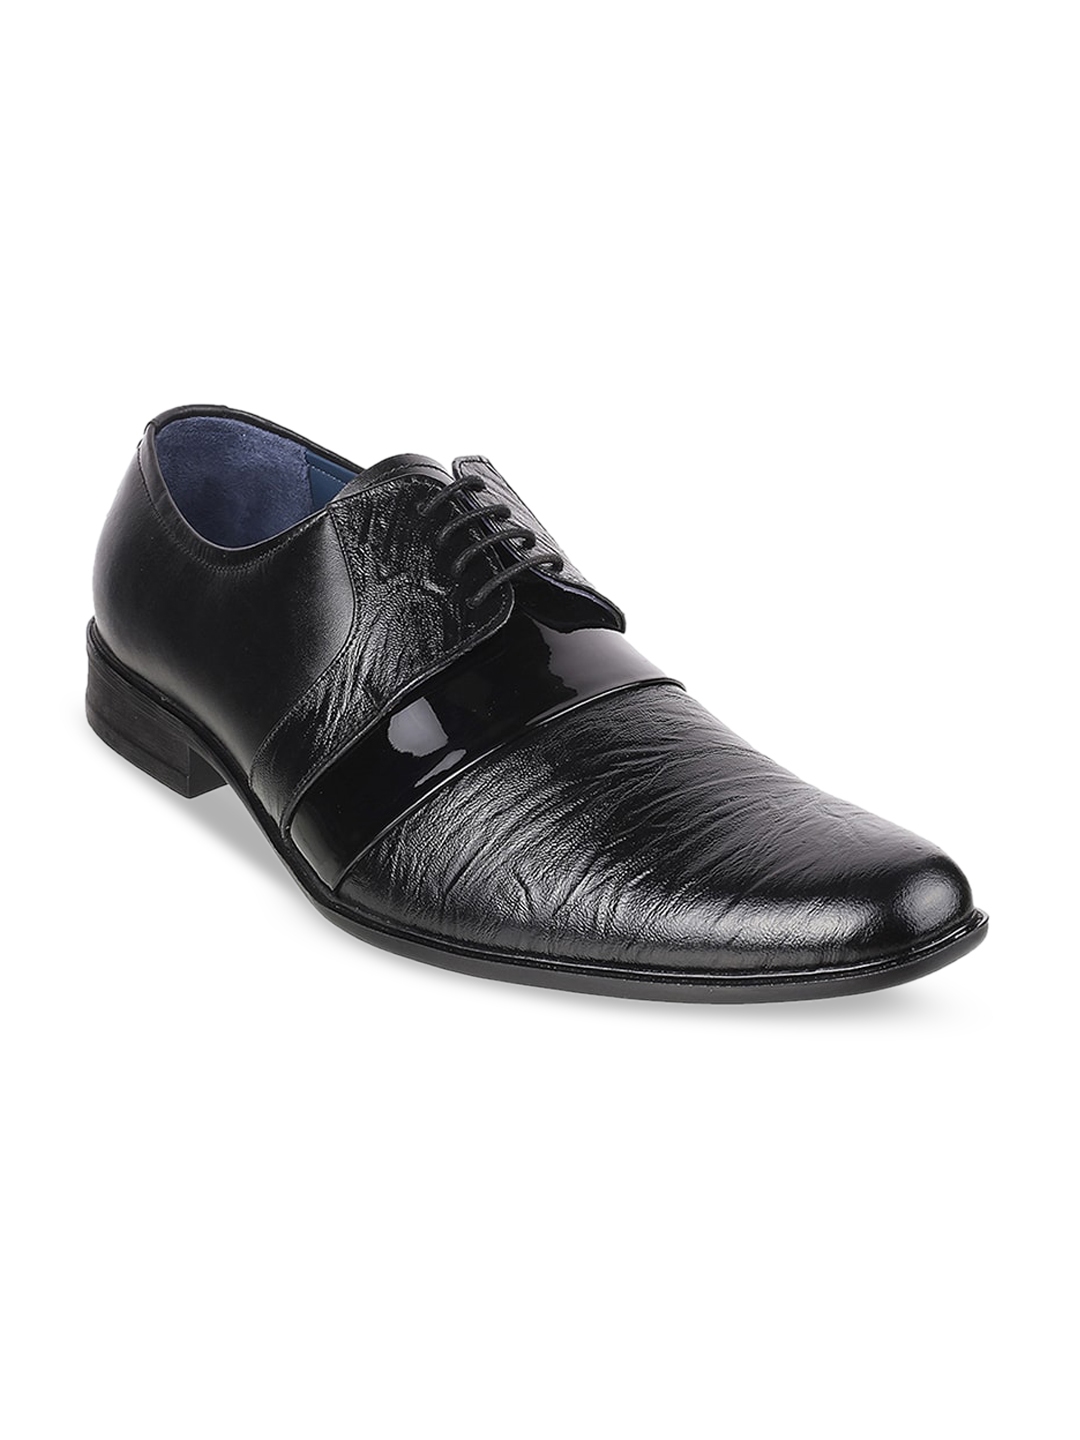 Buy Mochi Men Black Solid Leather Formal Derbys - Formal Shoes for Men ...